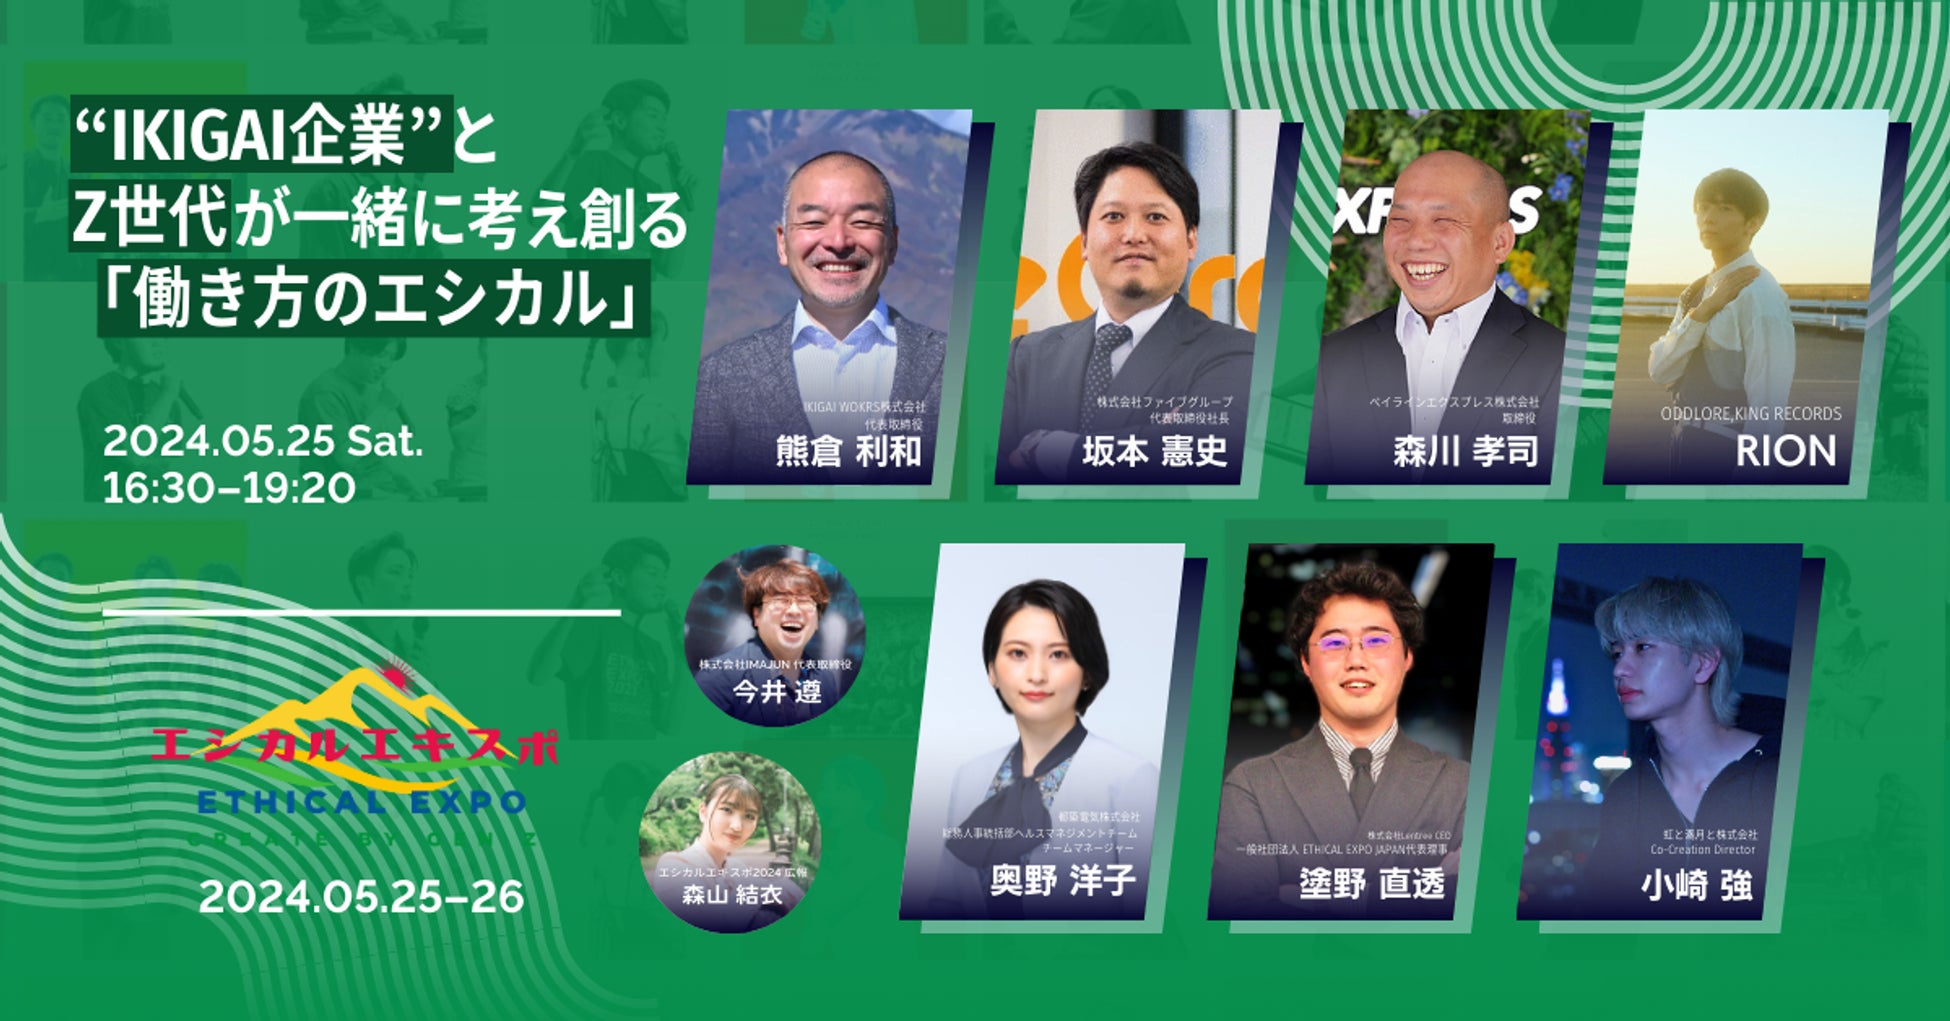 全国から1万人のZ世代が集まる日本最大級のエシカルの祭典「エシカルエキスポ2024 TOKYO」にて、Z世代とのトークセッションに働きがいのある”IKIGAI”企業としてファイブグループが登壇